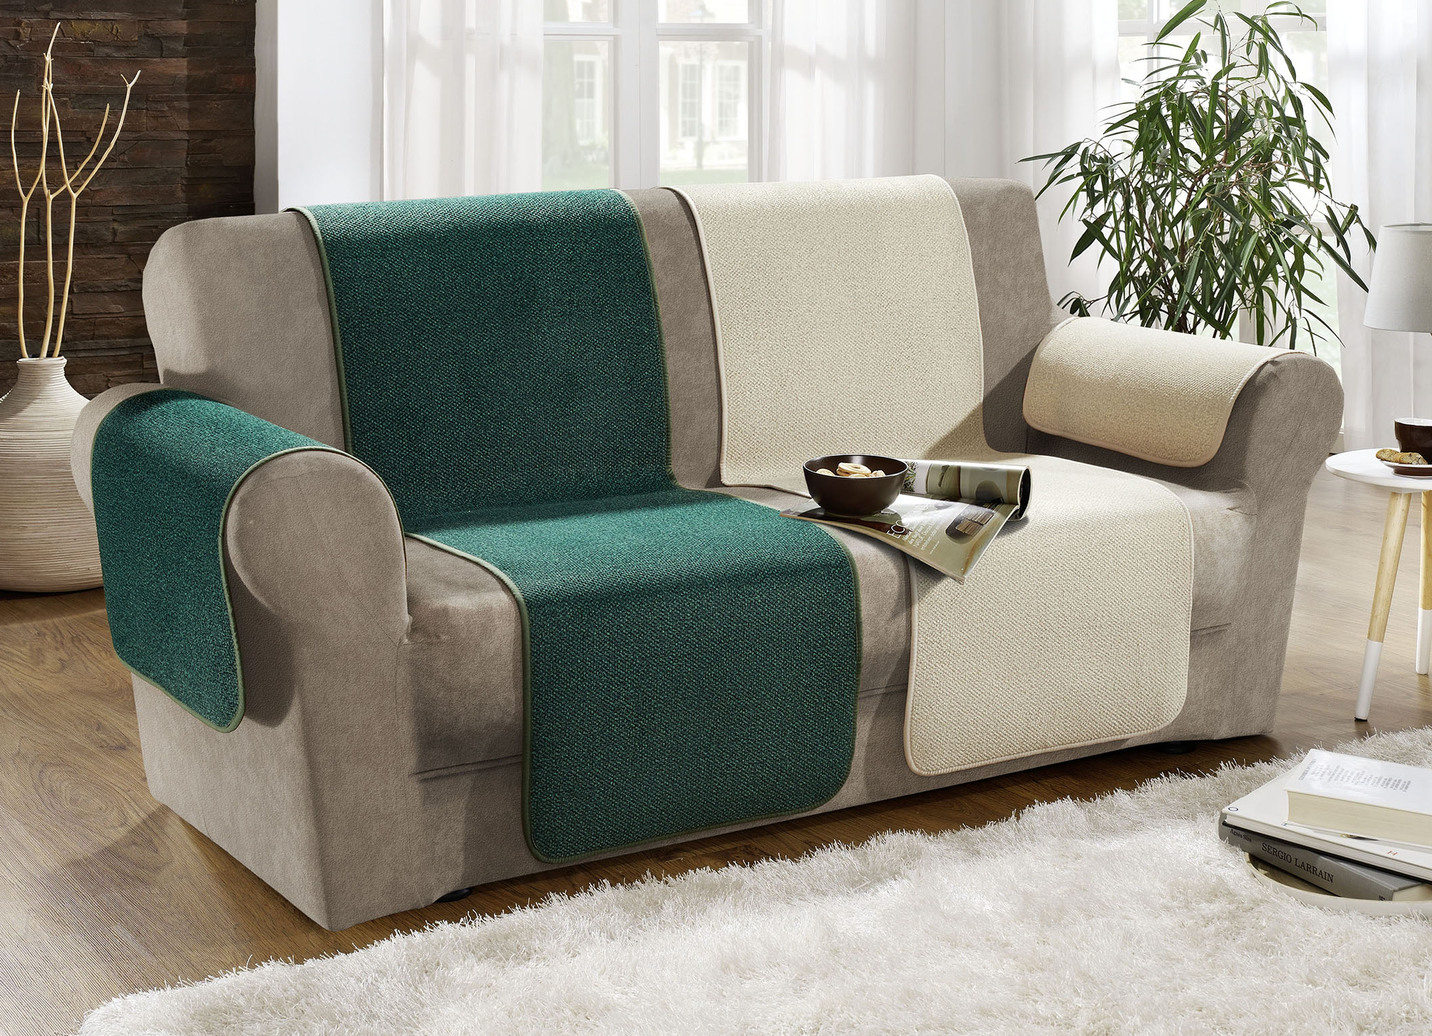 Sessel-, Couch- und Armlehnenschoner mit Anti-Rutsch-Beschichtung, Größe 865 (2 Armlehnenschoner, 50x 70 cm), Natur von BADER